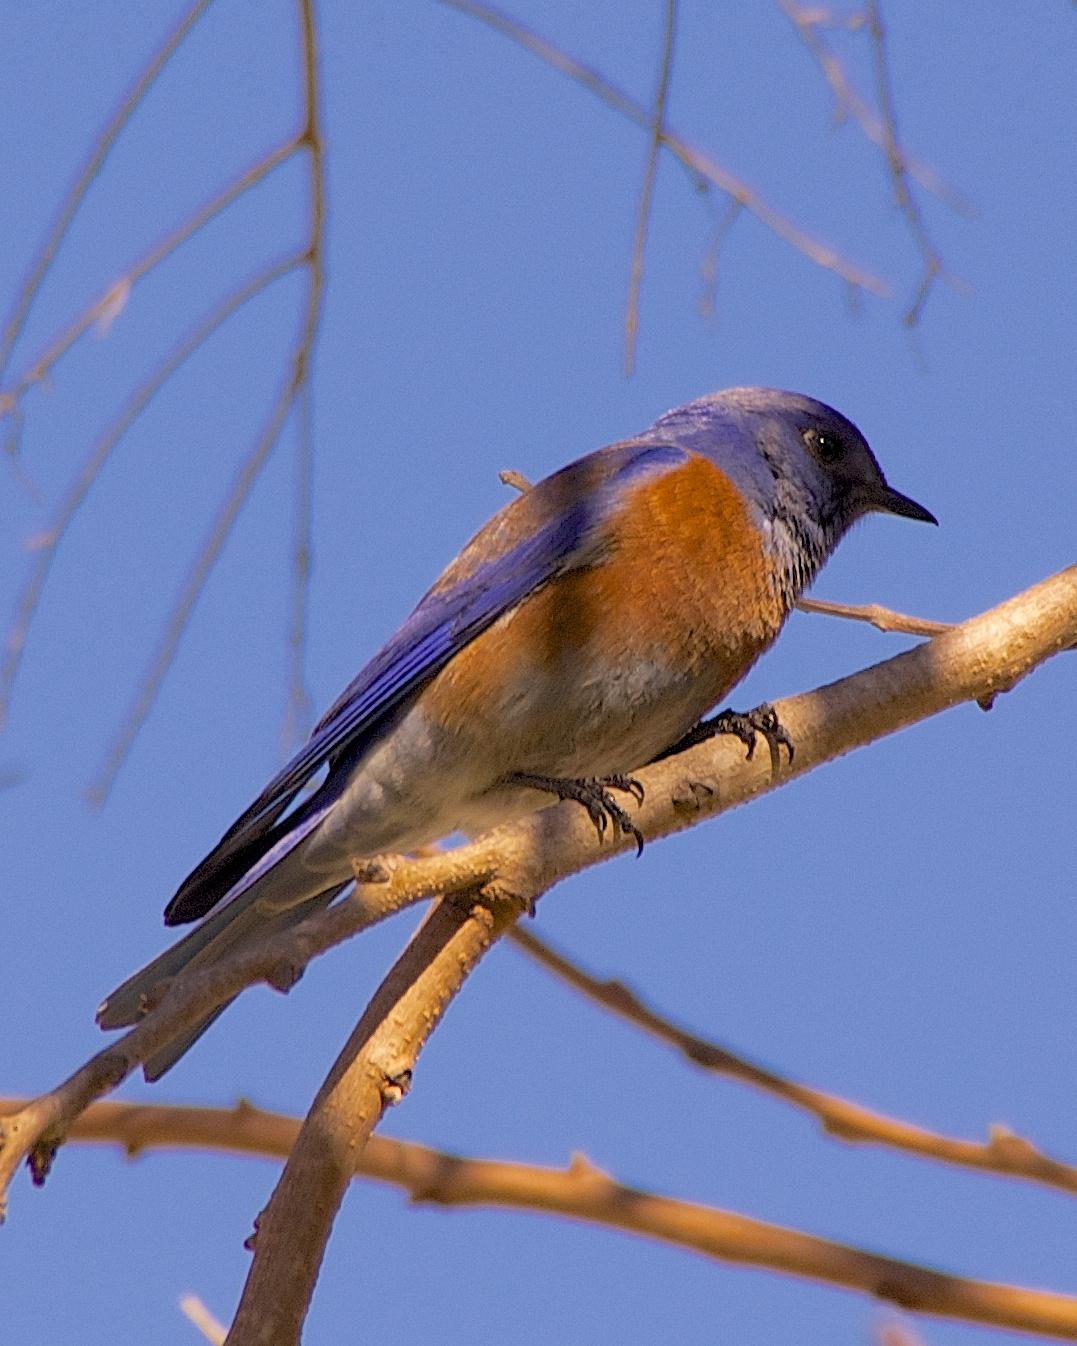 Western Bluebird Photo by Gerald Hoekstra